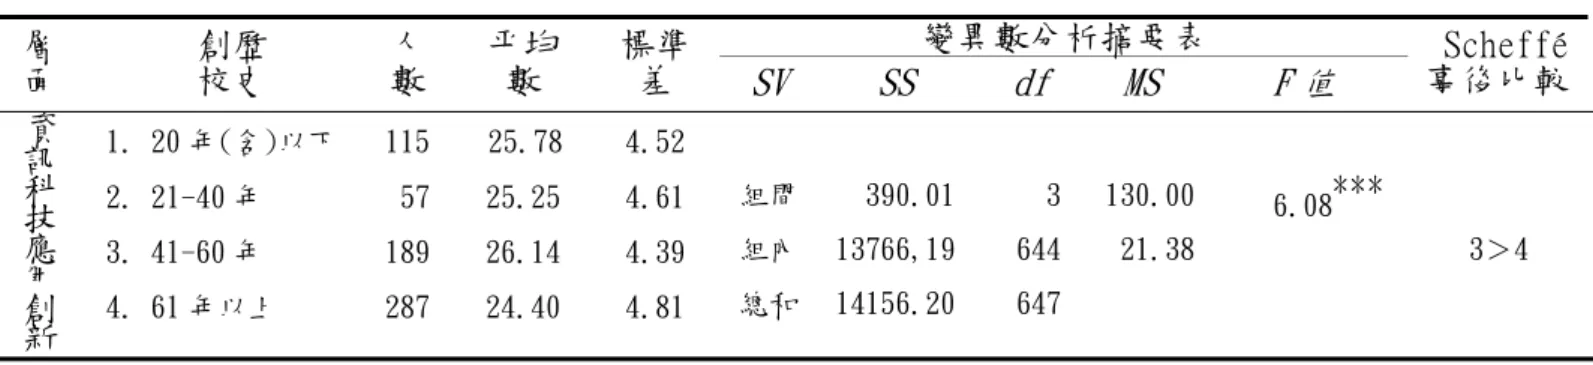 表 4-4-4 (續)  變異數分析摘要表  層 面       校史   創歷  人 數  平均數  標準差  SV  SS  df   MS  F 值   Scheffé事後比較 1